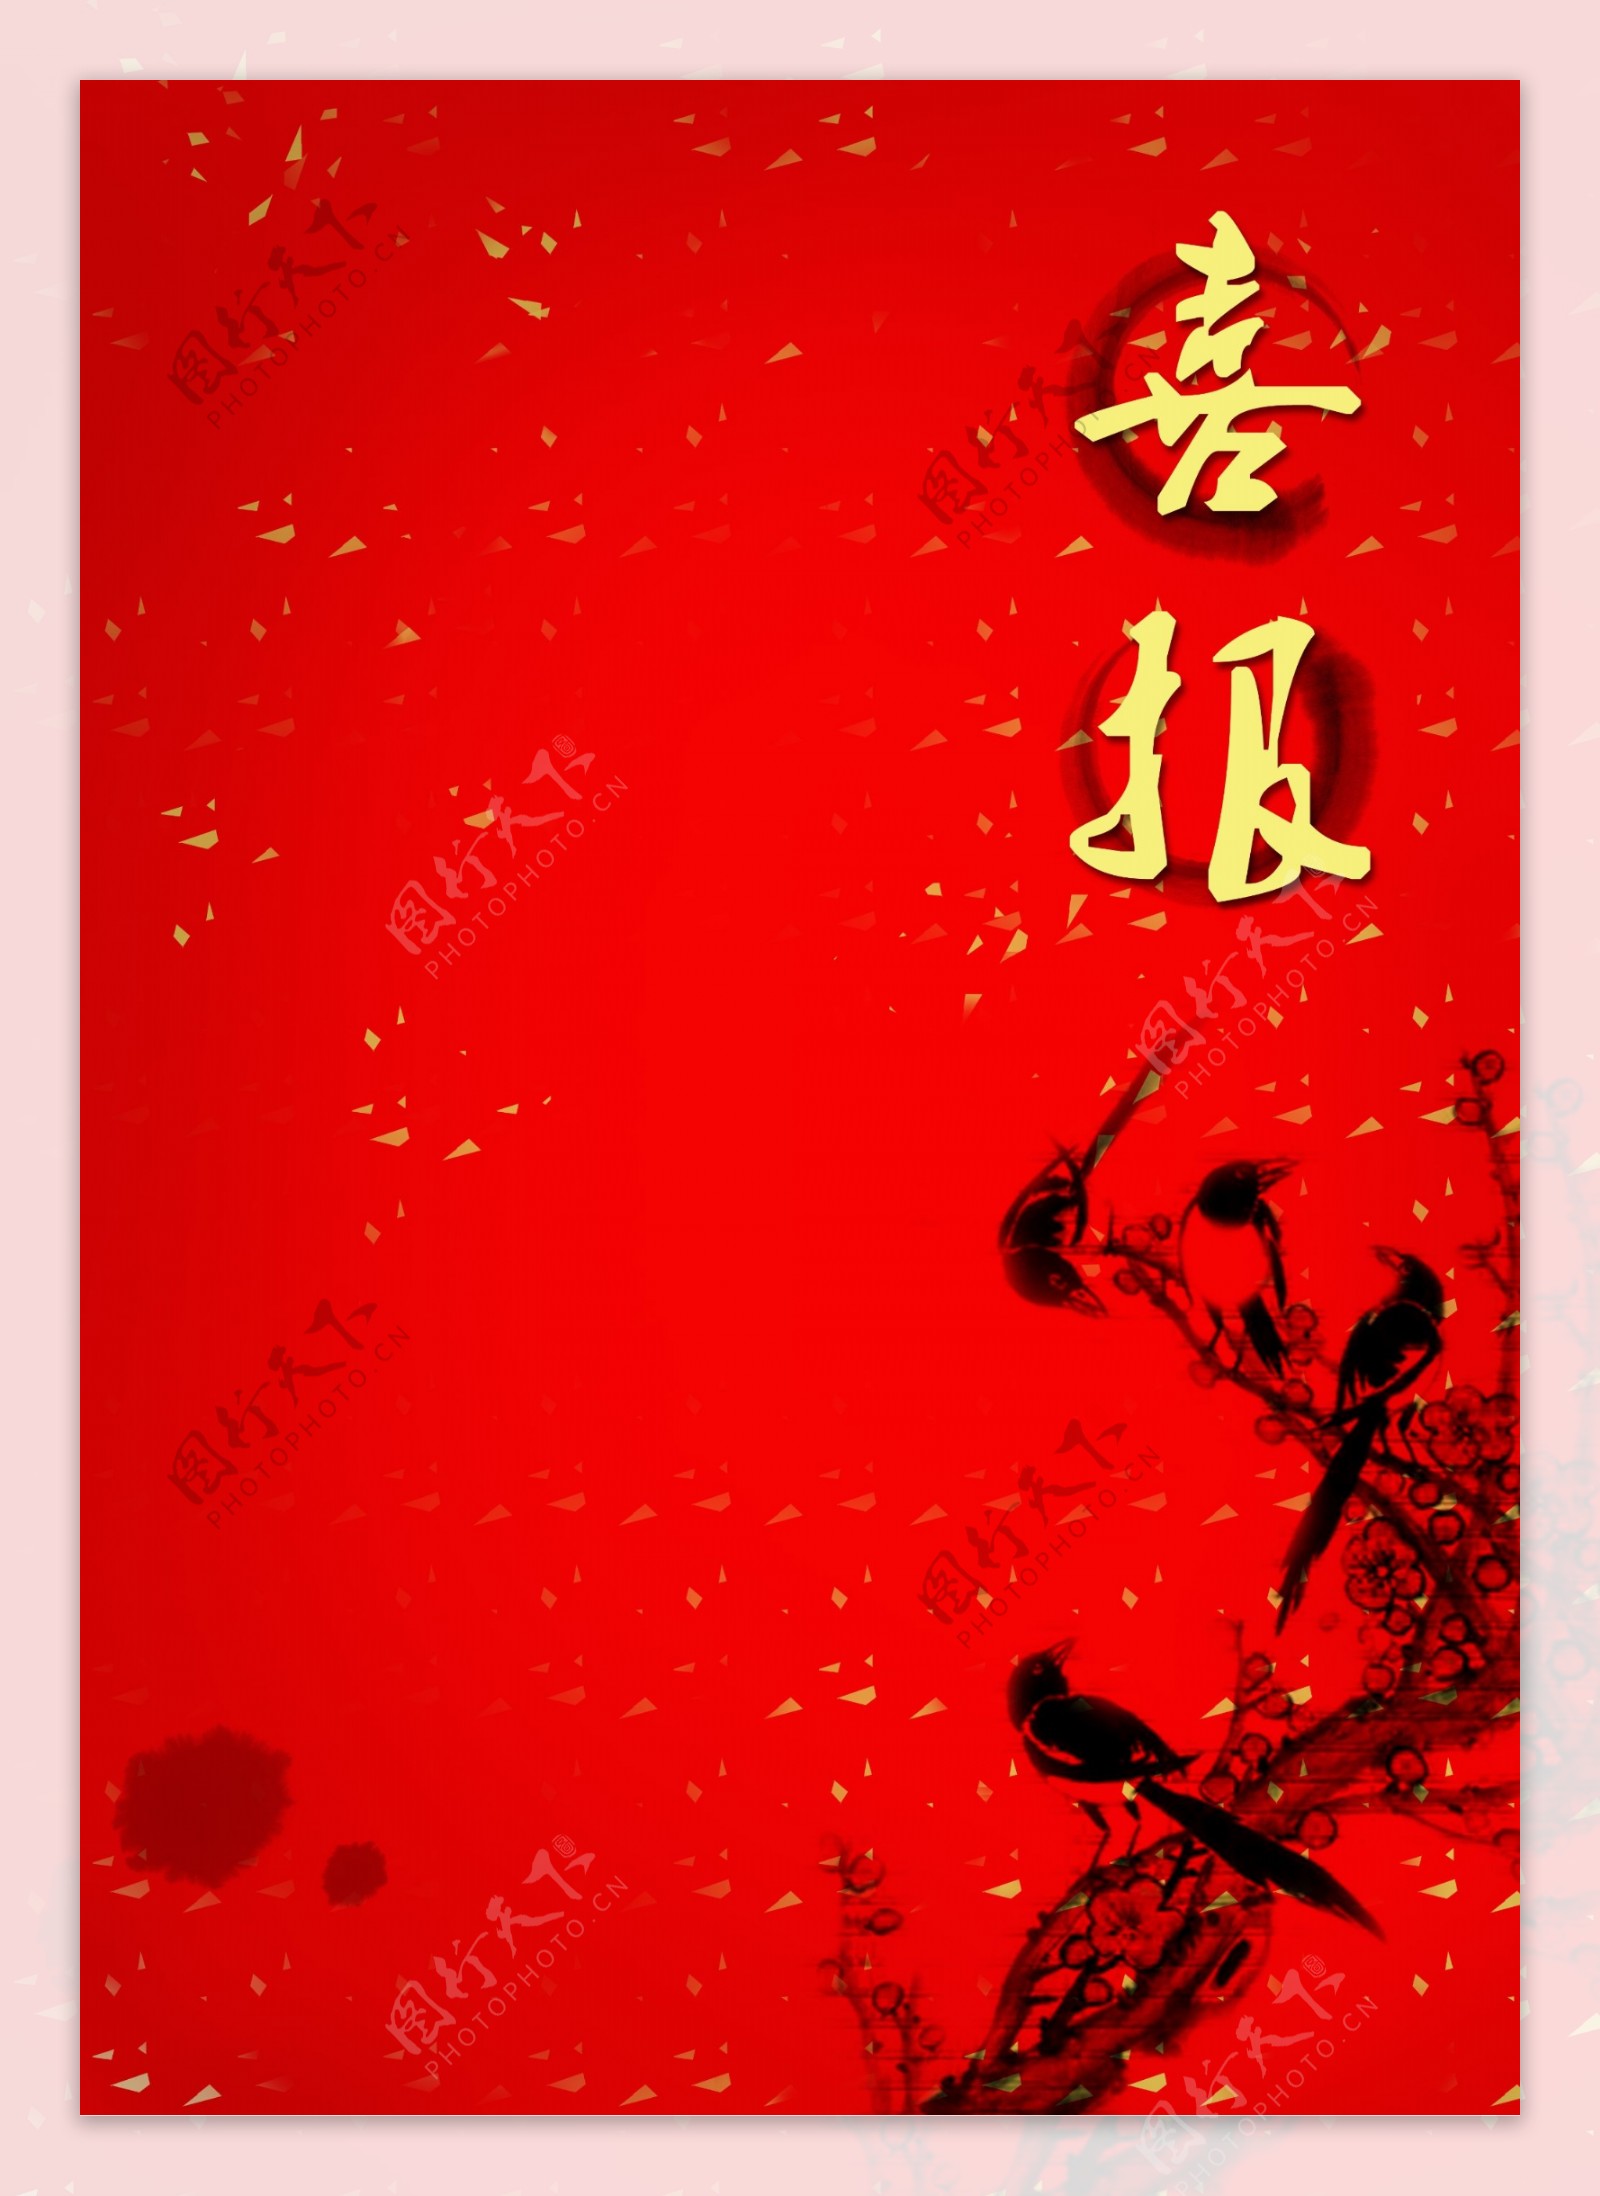 中国风红色水墨画喜报背景素材